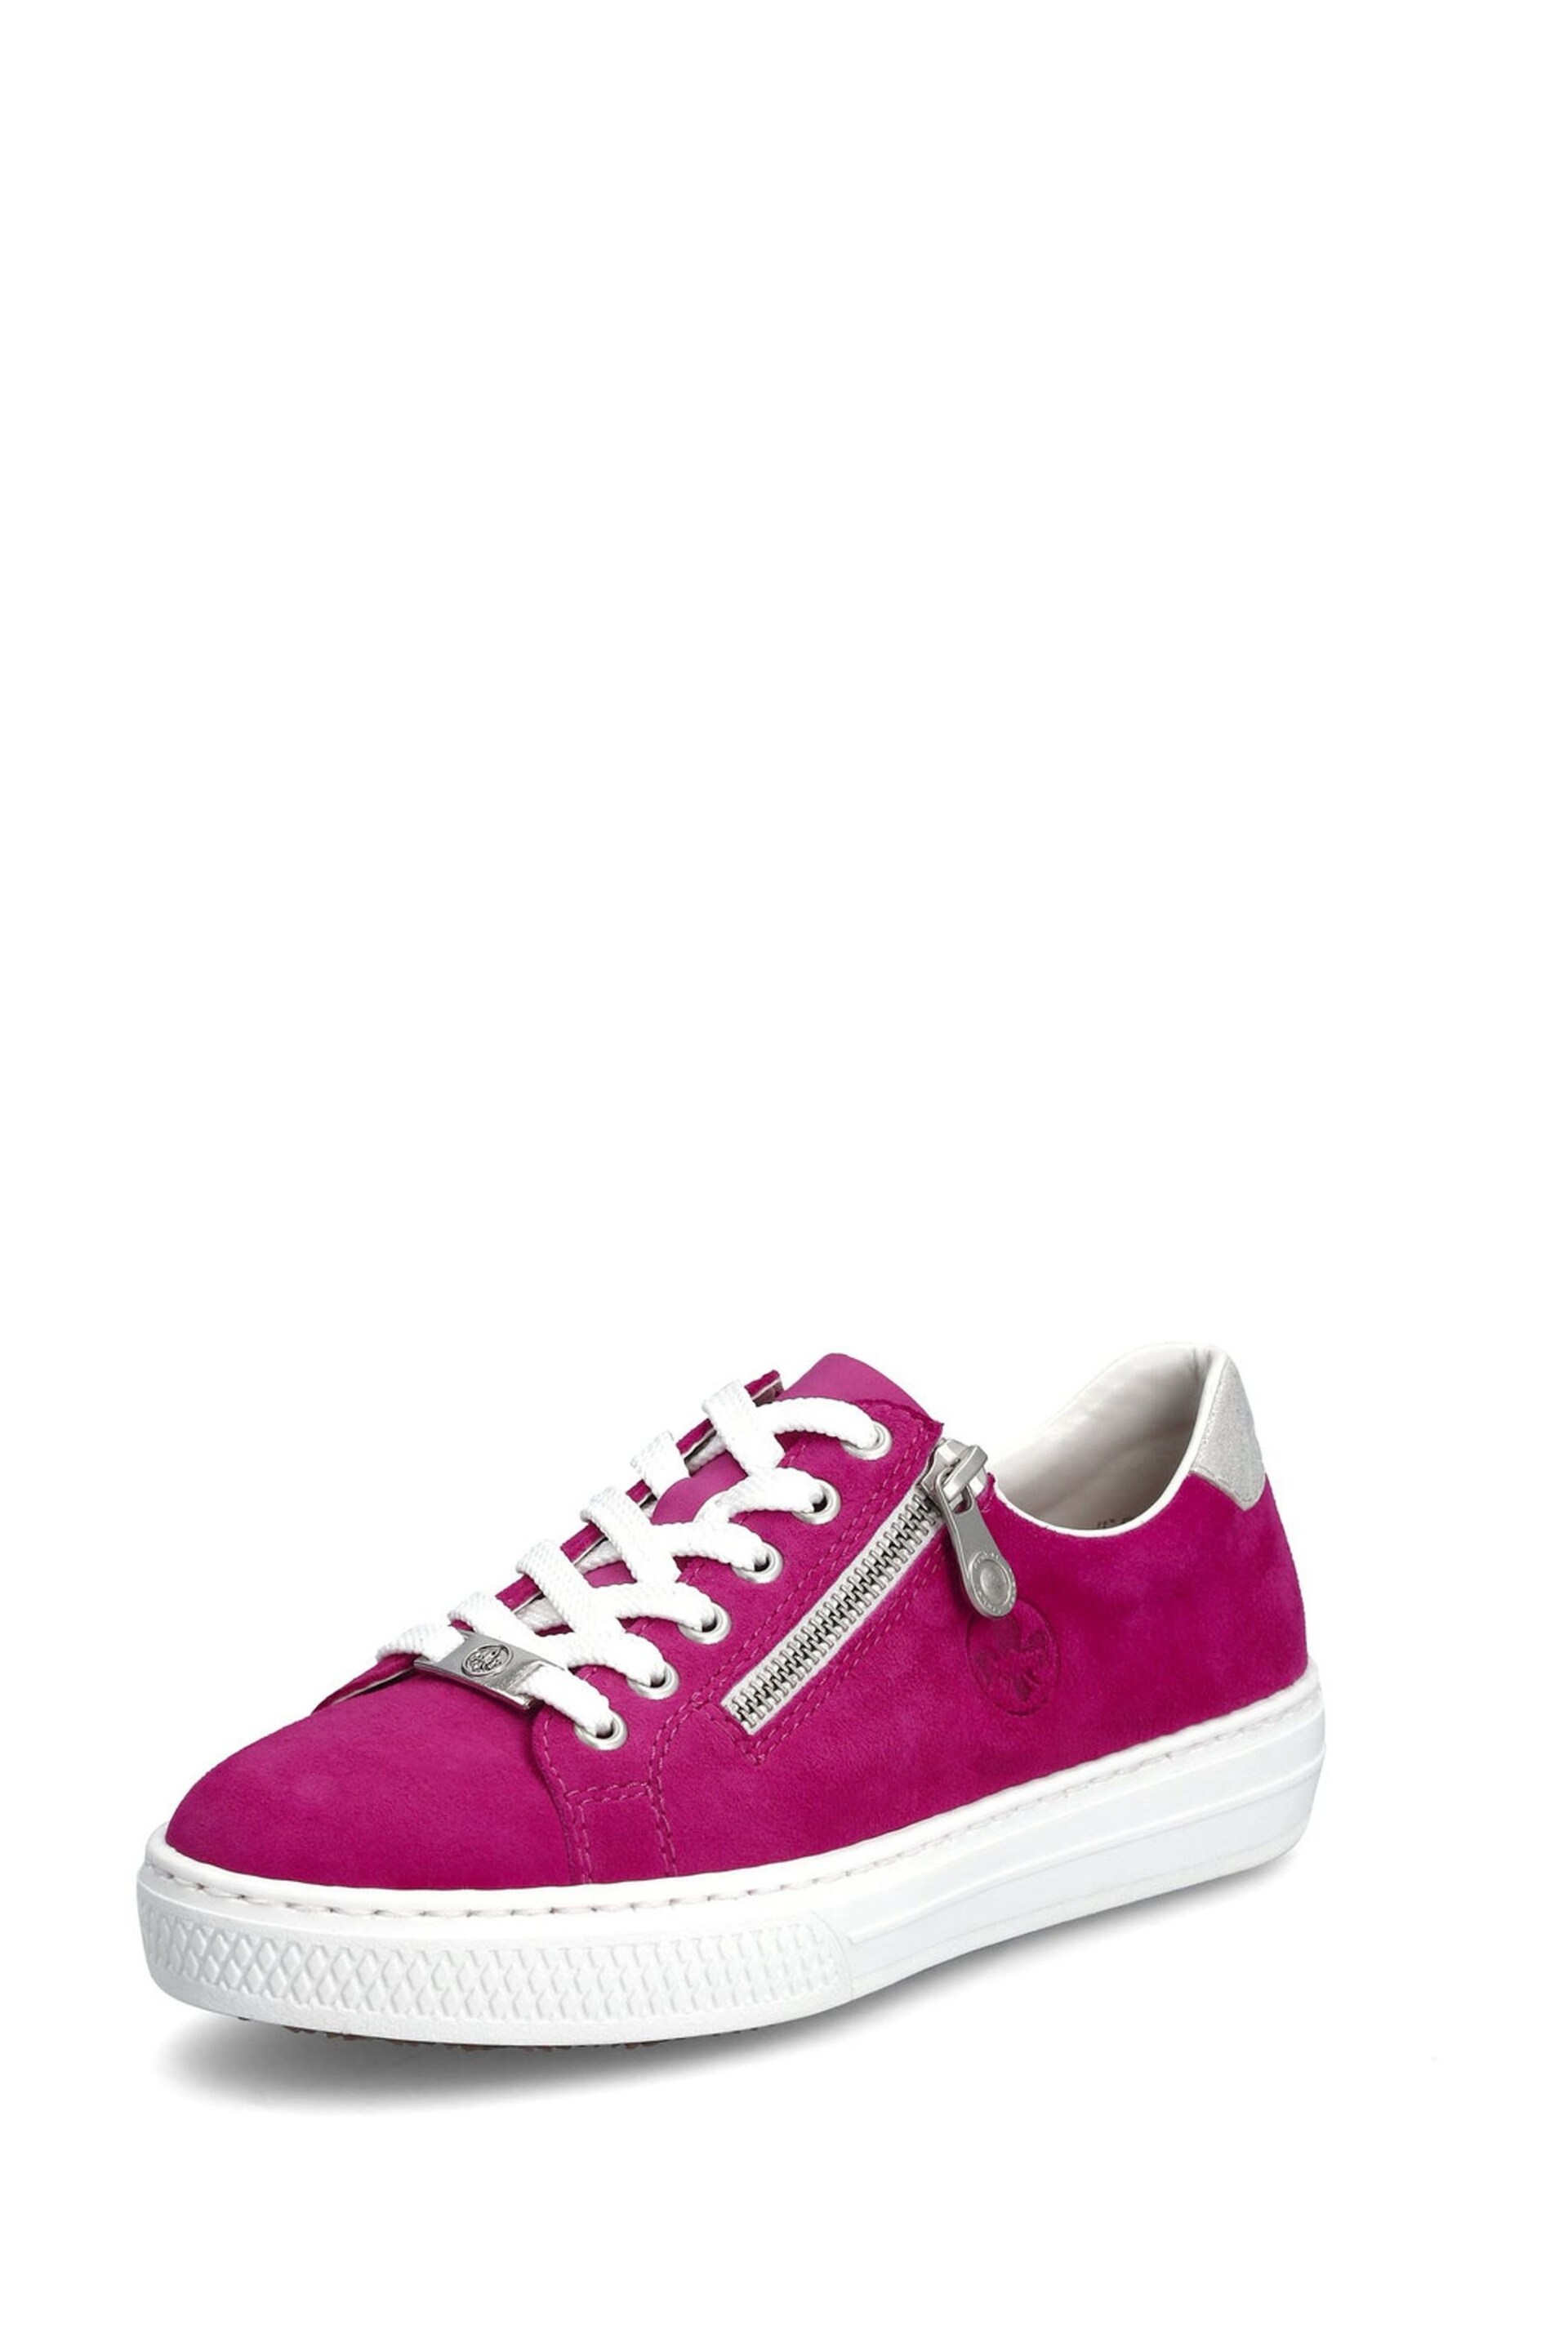 Rieker Womens Pink Zipper Shoes - Image 3 of 10